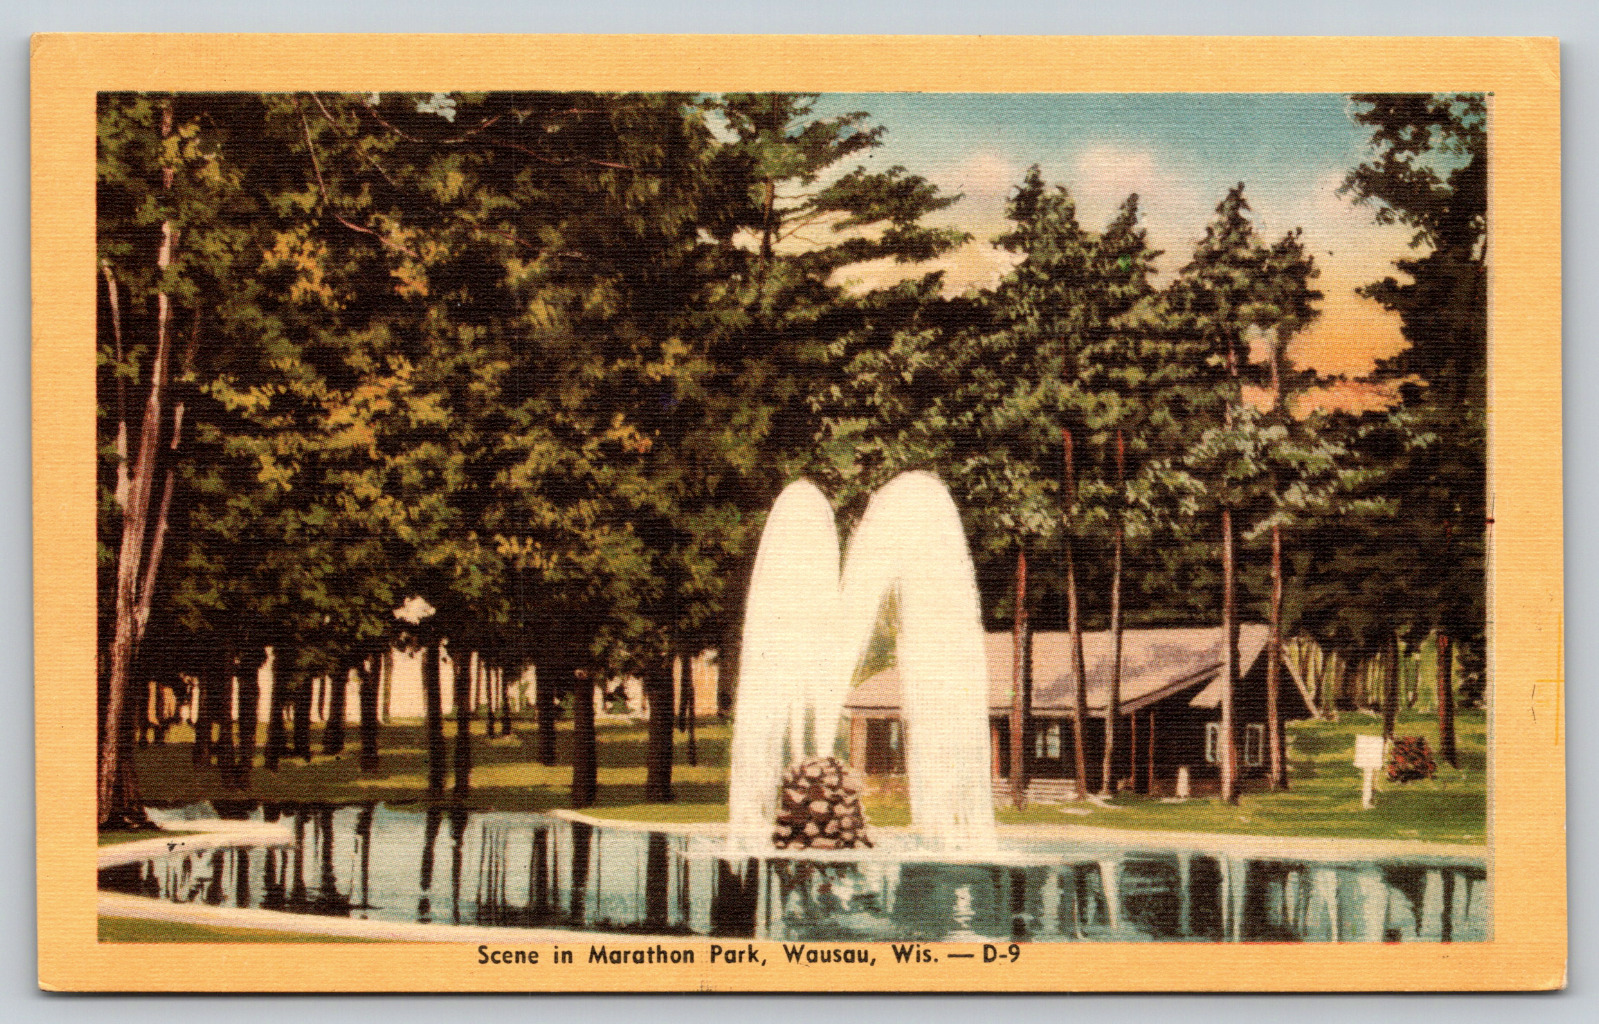 Scene in Marathon Park, Wausau, Wis. - D-9 1940s Vintage Postcard Linen